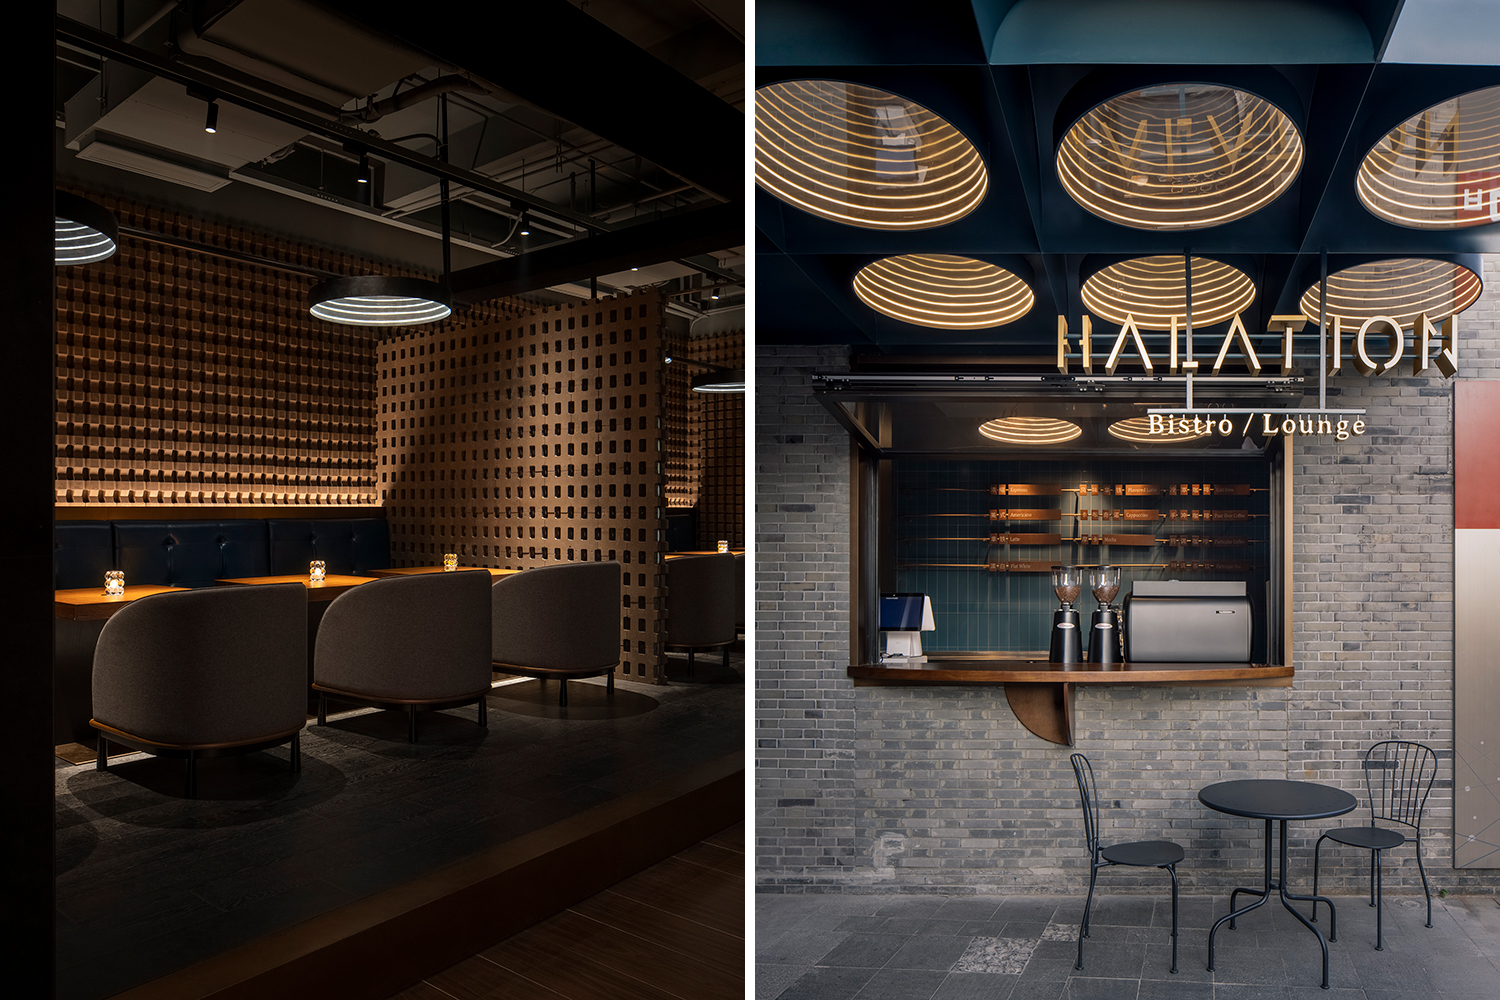 Halation Bistro Lounge shortlisted for 2022 INDE.Awards